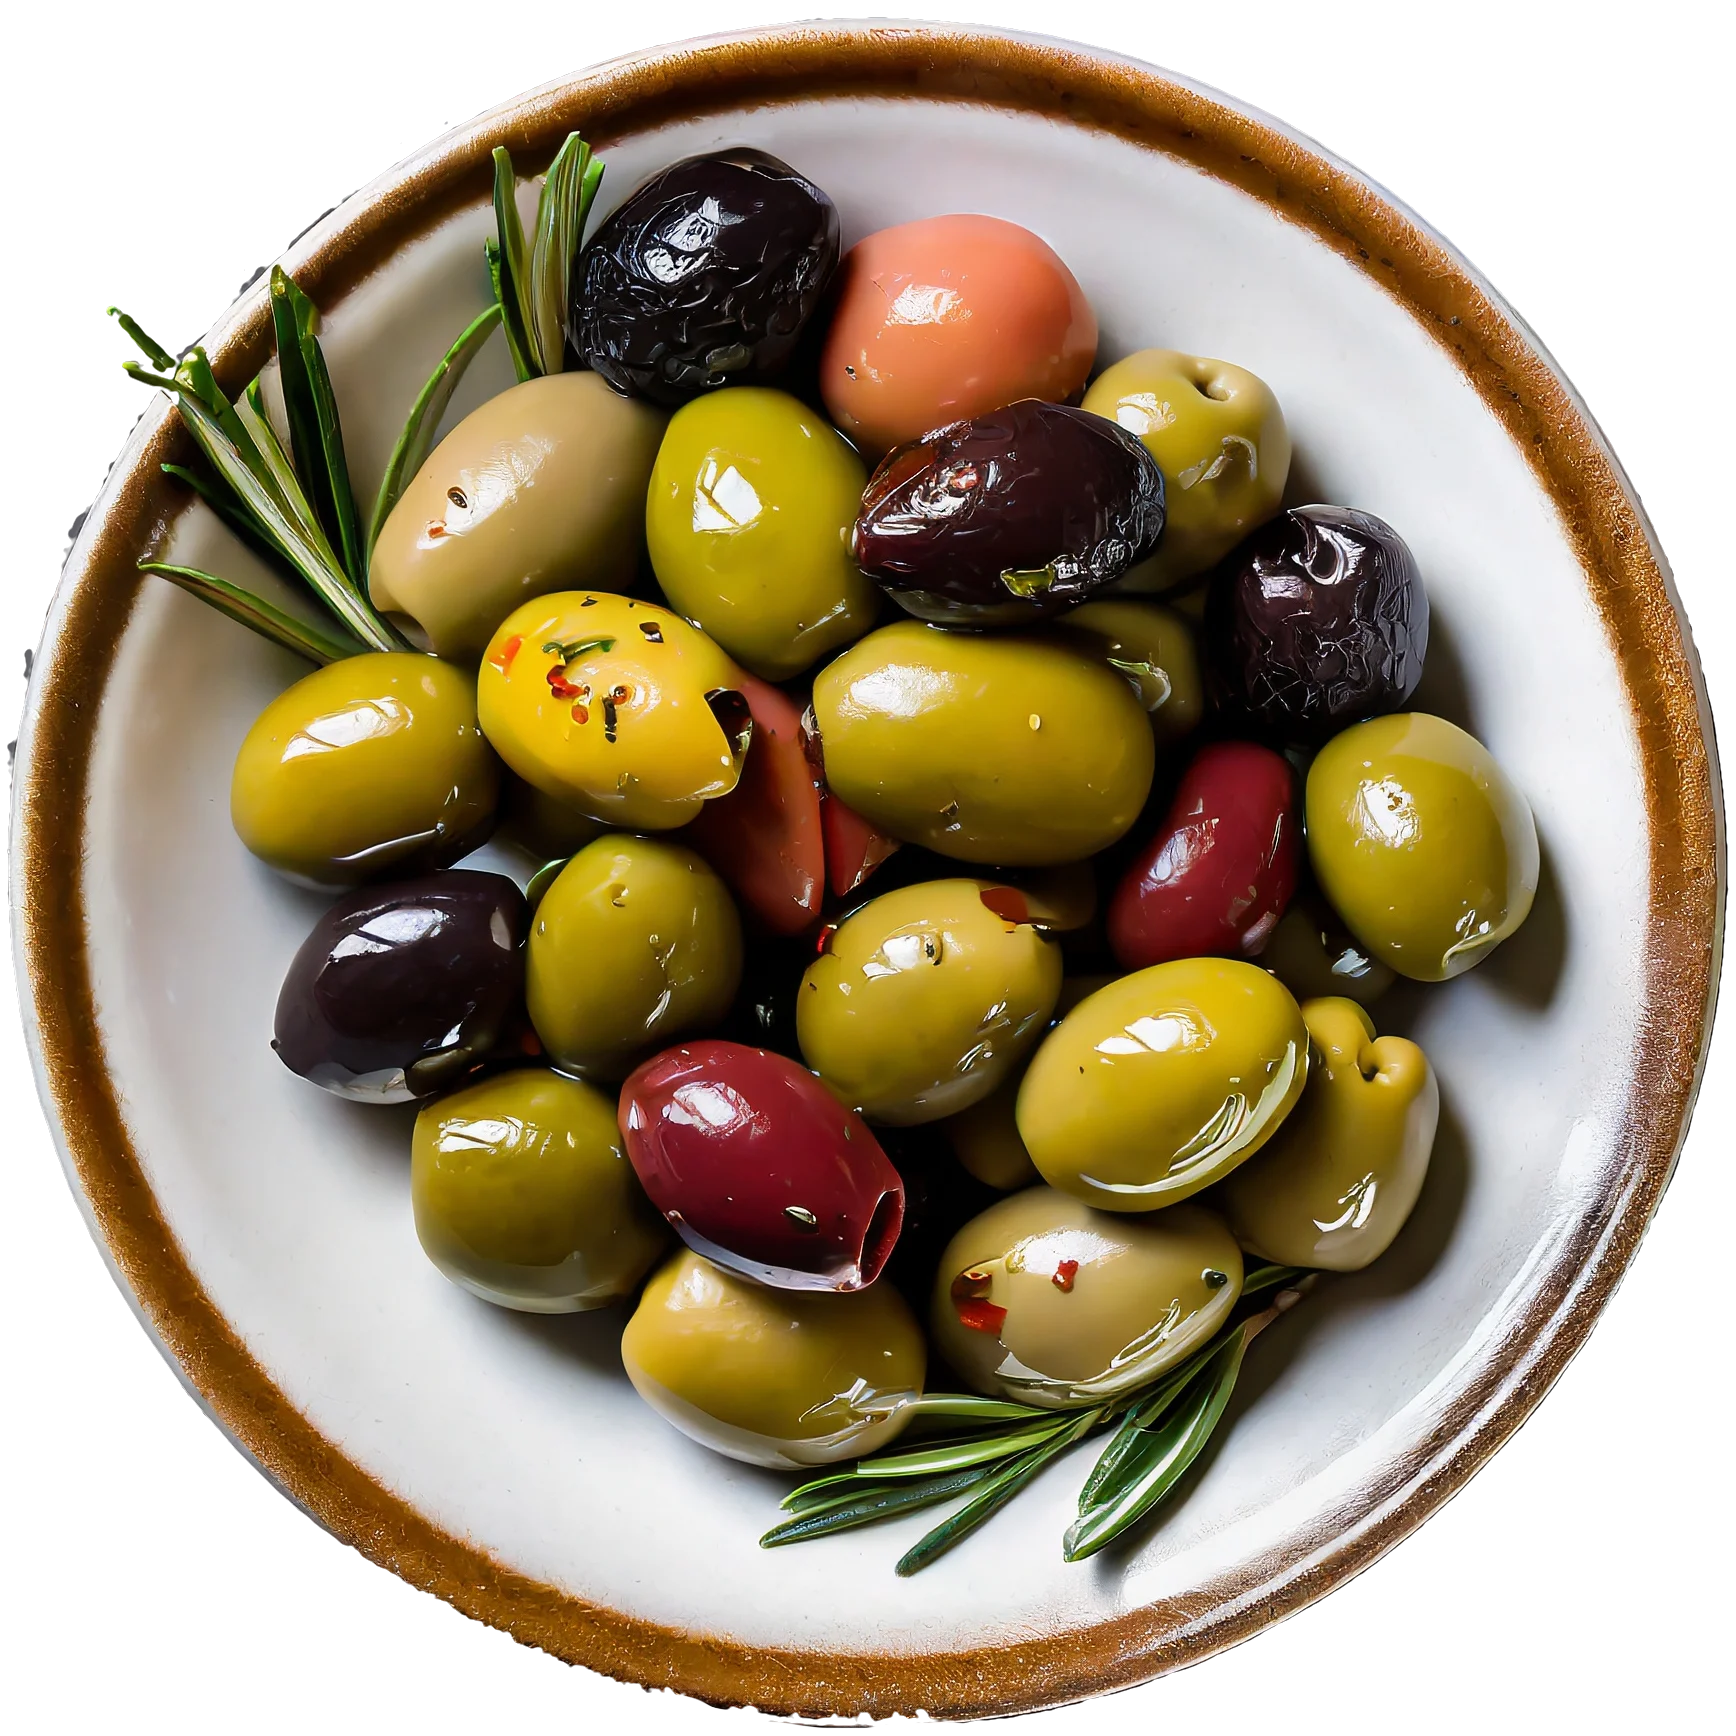 Olive Miste